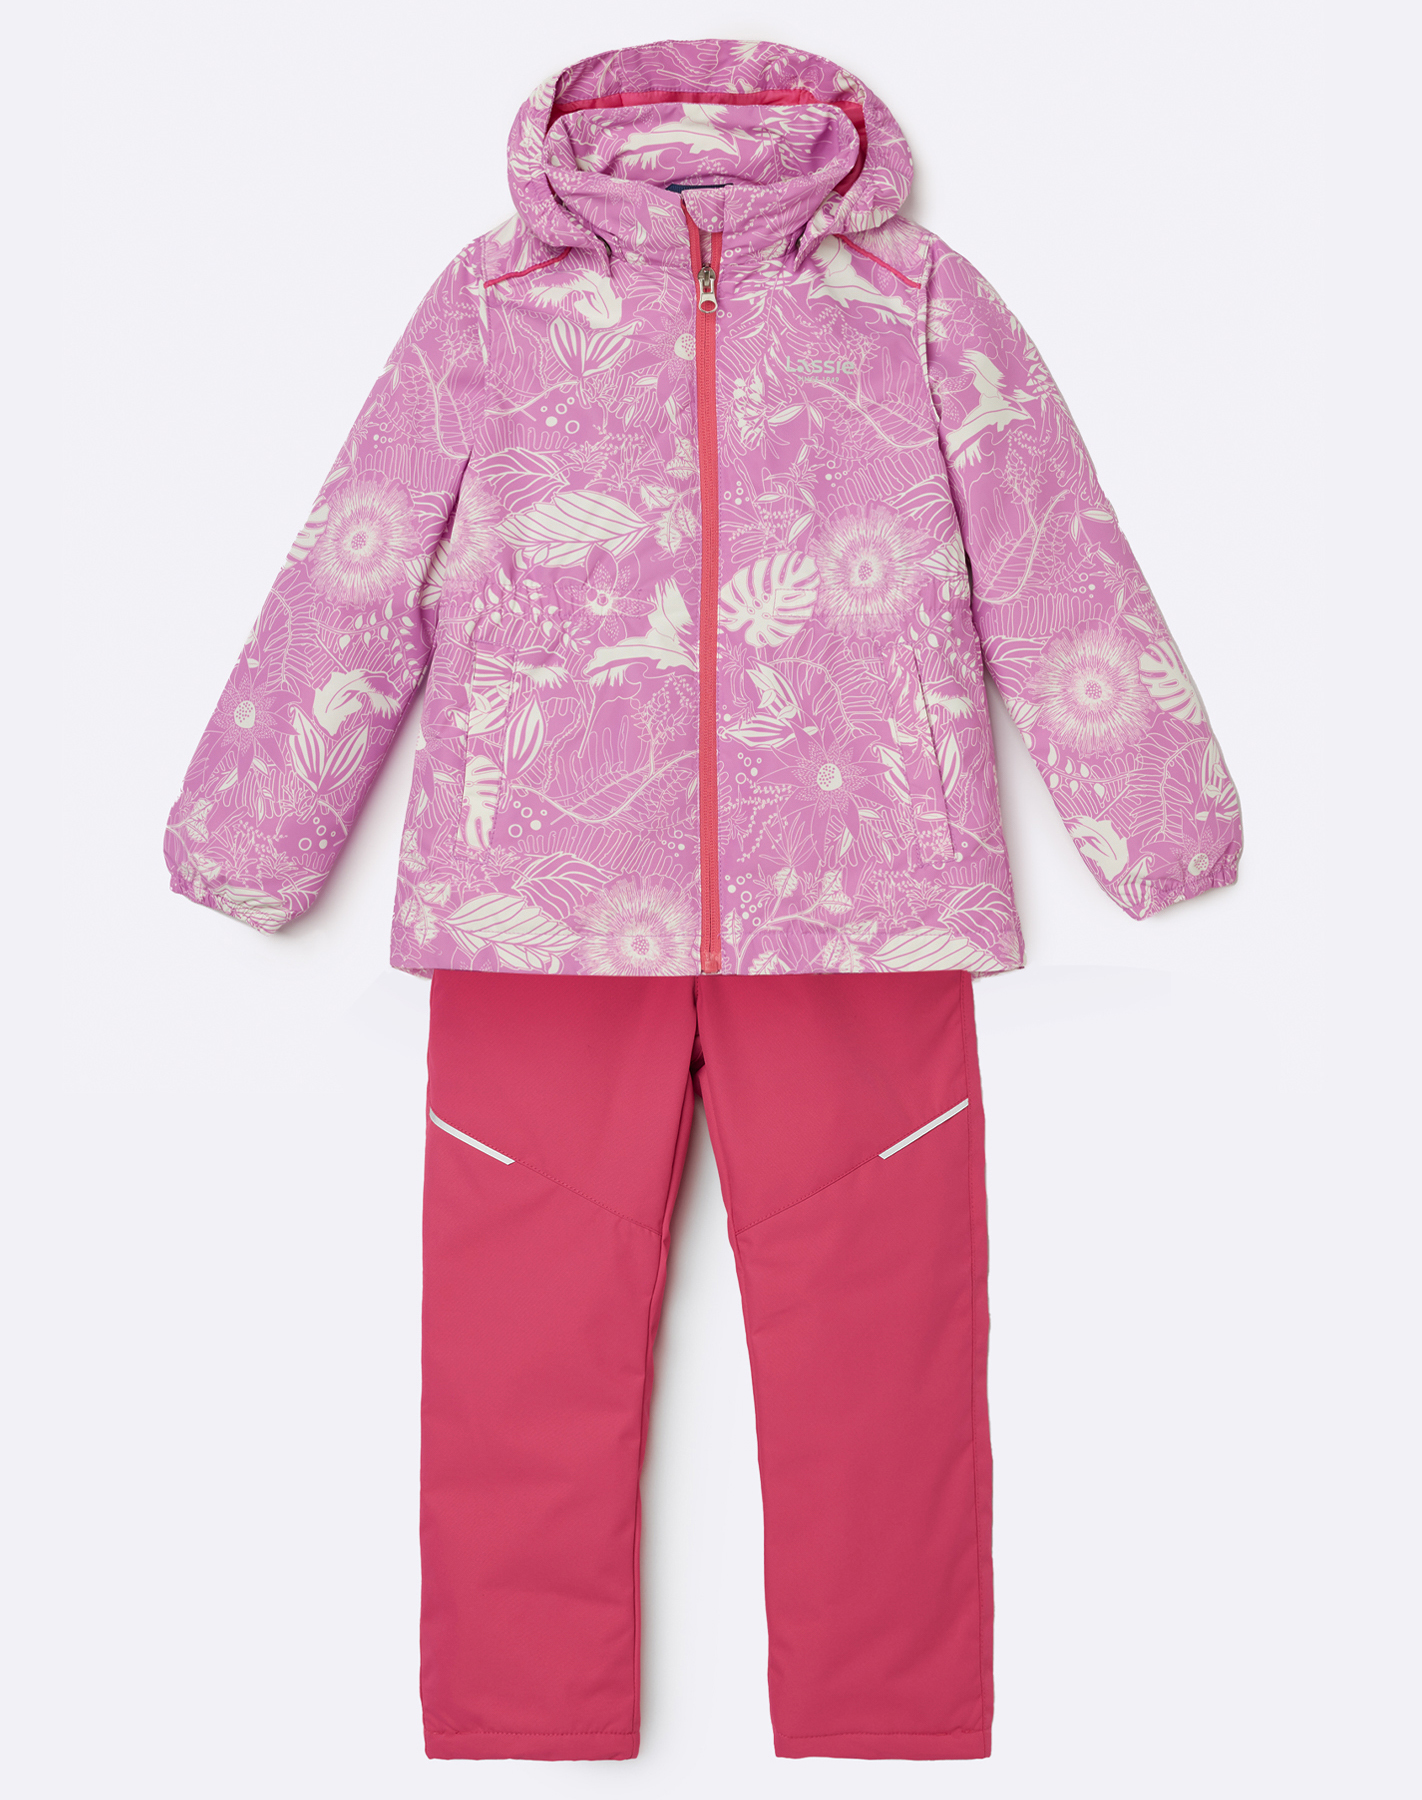 Комплект верхней одежды детский Lassie Manna 7100042A, 4671 рисунком  розовый, 110